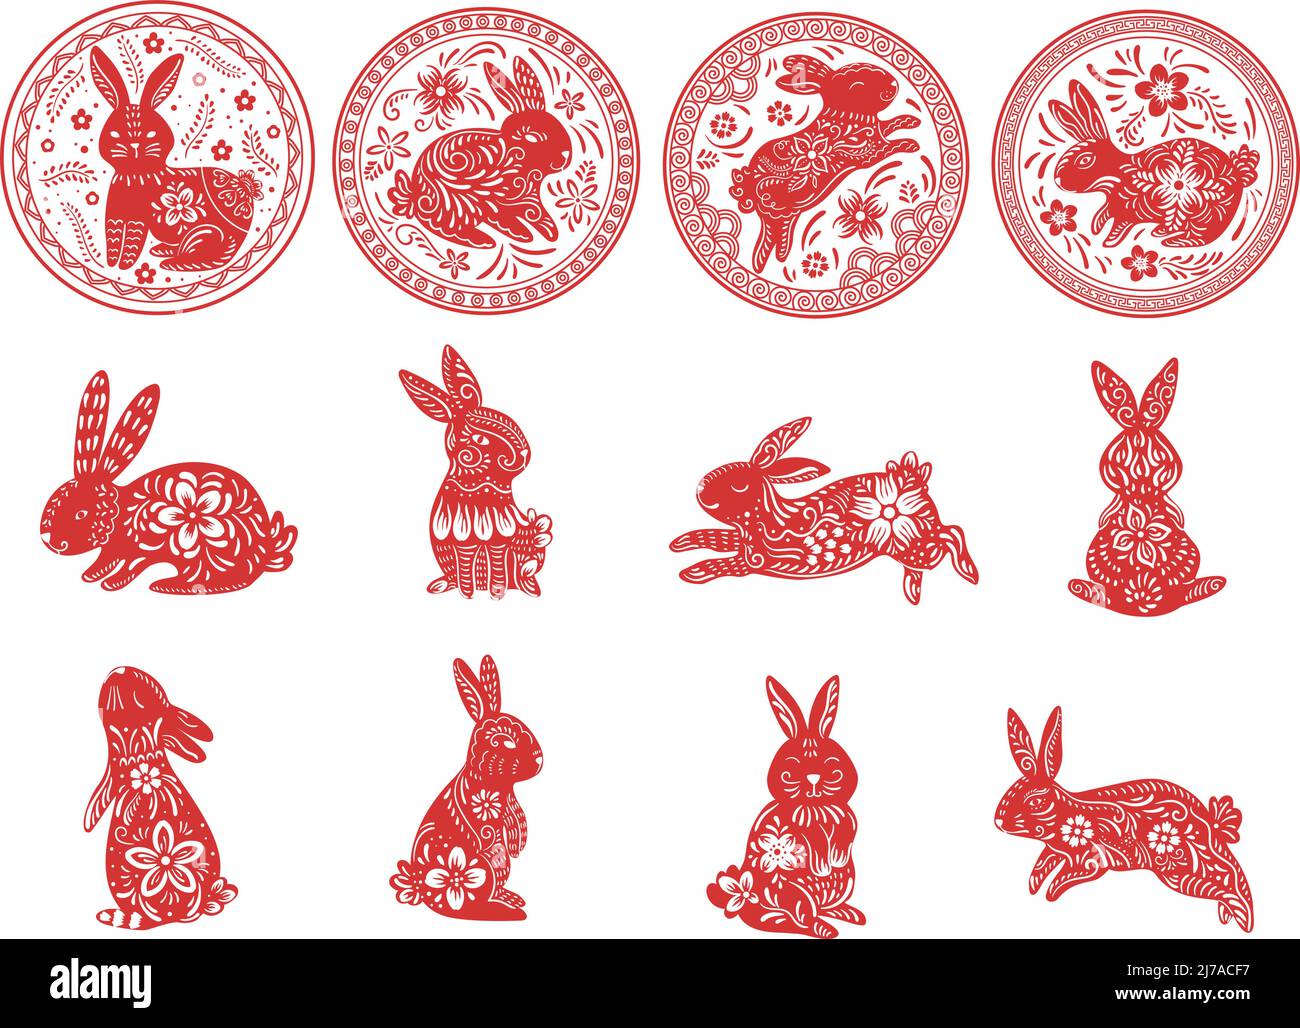 Conejo de año nuevo chino silueta de conejito rojo animal del zodiaco  tradicional rojo con flores blancas tarjeta de horóscopo 2023 o póster  cuadrado calendario lunar asiático vector ilustración oriental